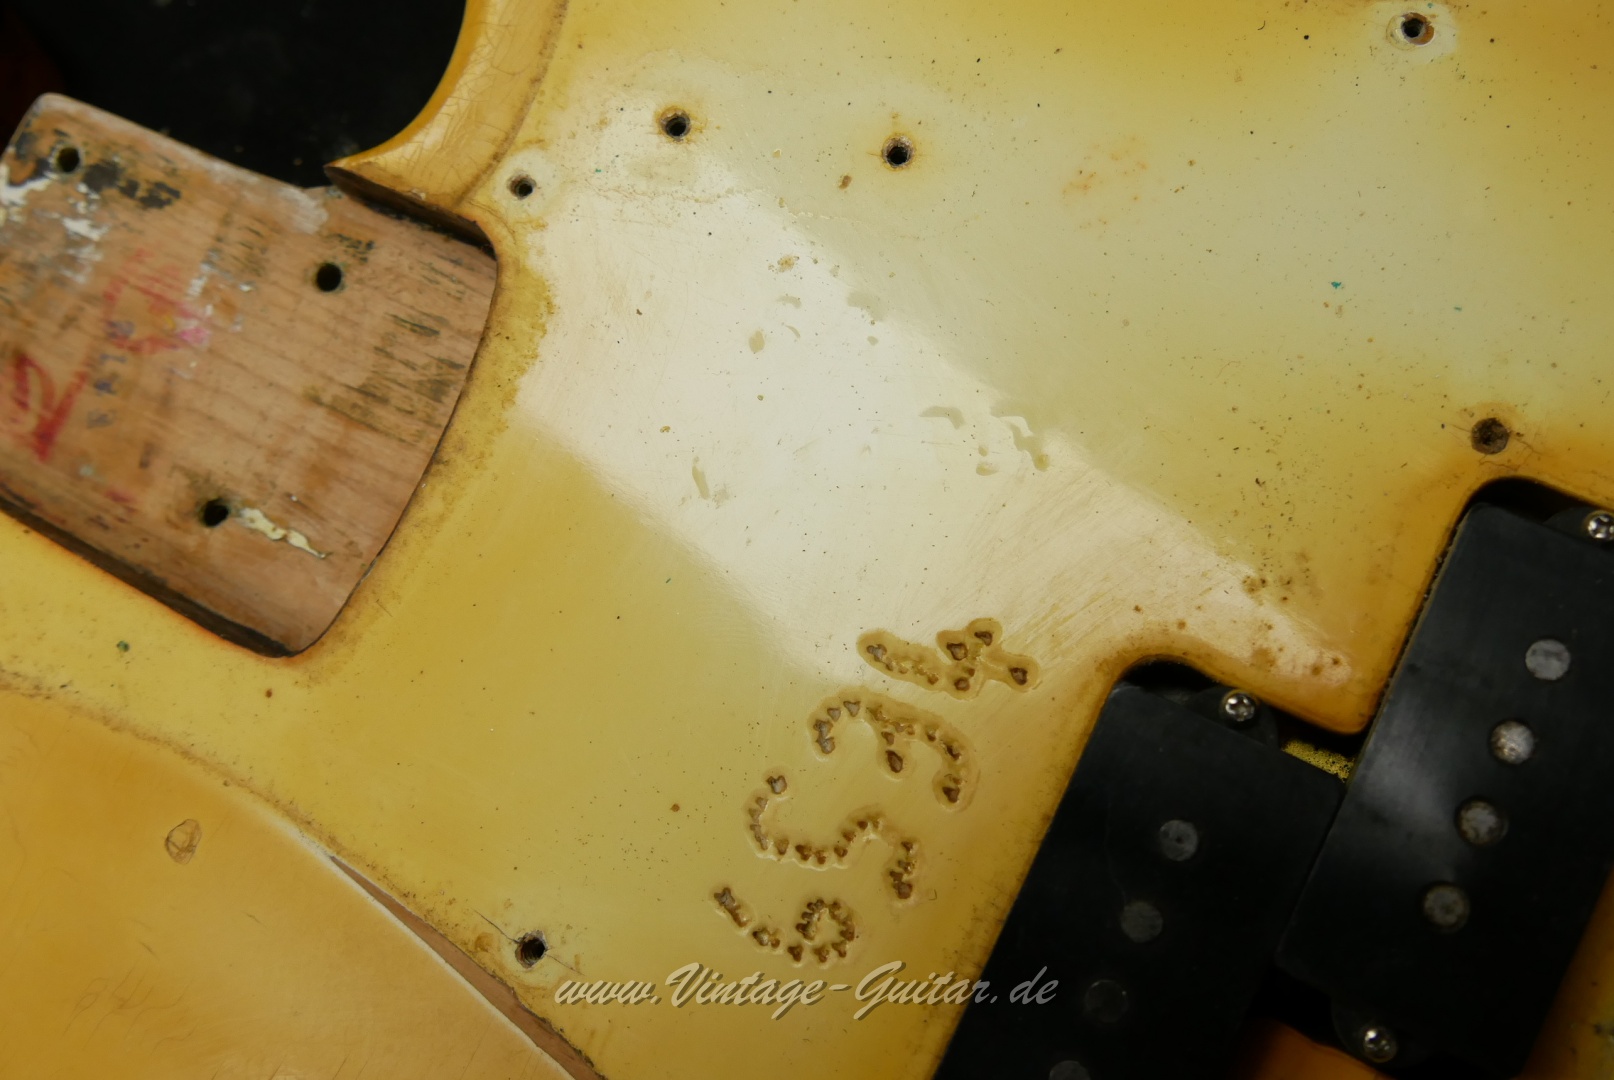 Fender-Precision-Bass-1969-olympic-white-001028.JPG